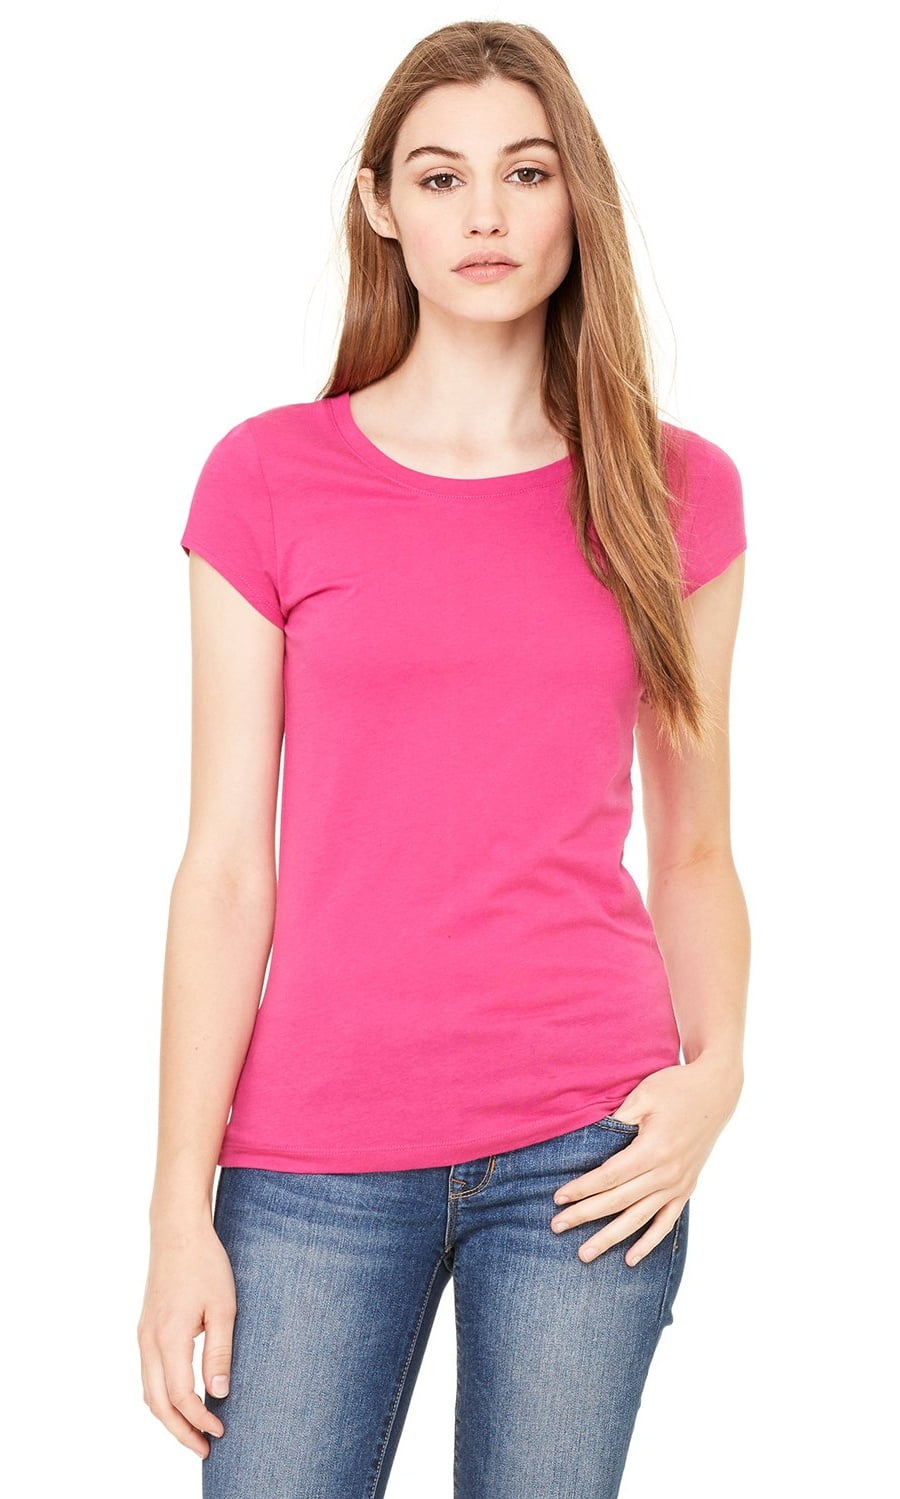 Clementine Apparel - Women's Sheer Jersey Short-Sleeve T-Shirt ...